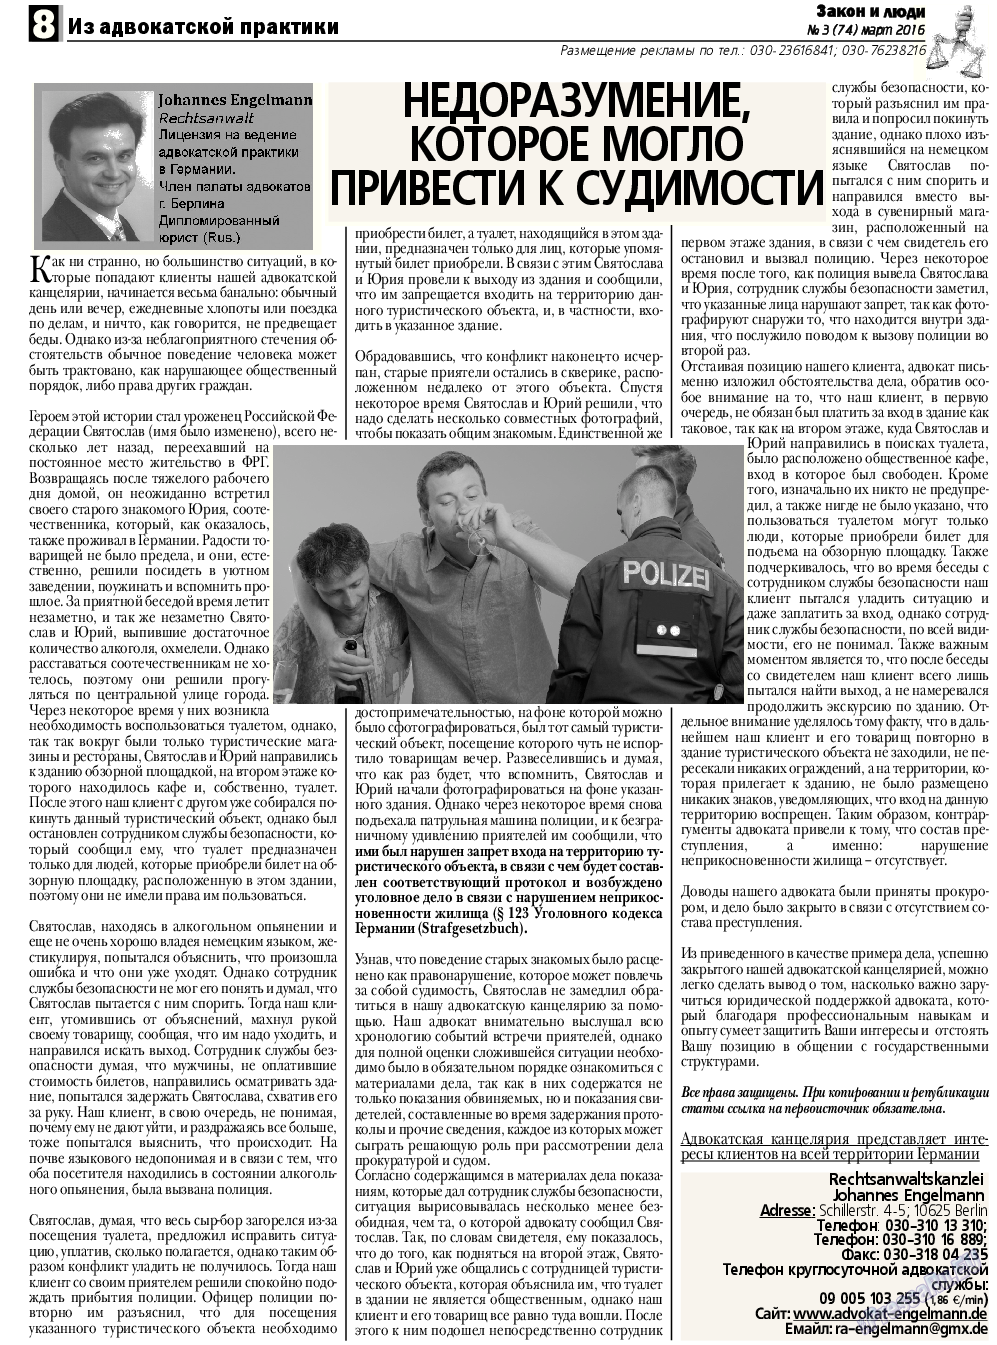 Закон и люди, газета. 2016 №3 стр.8